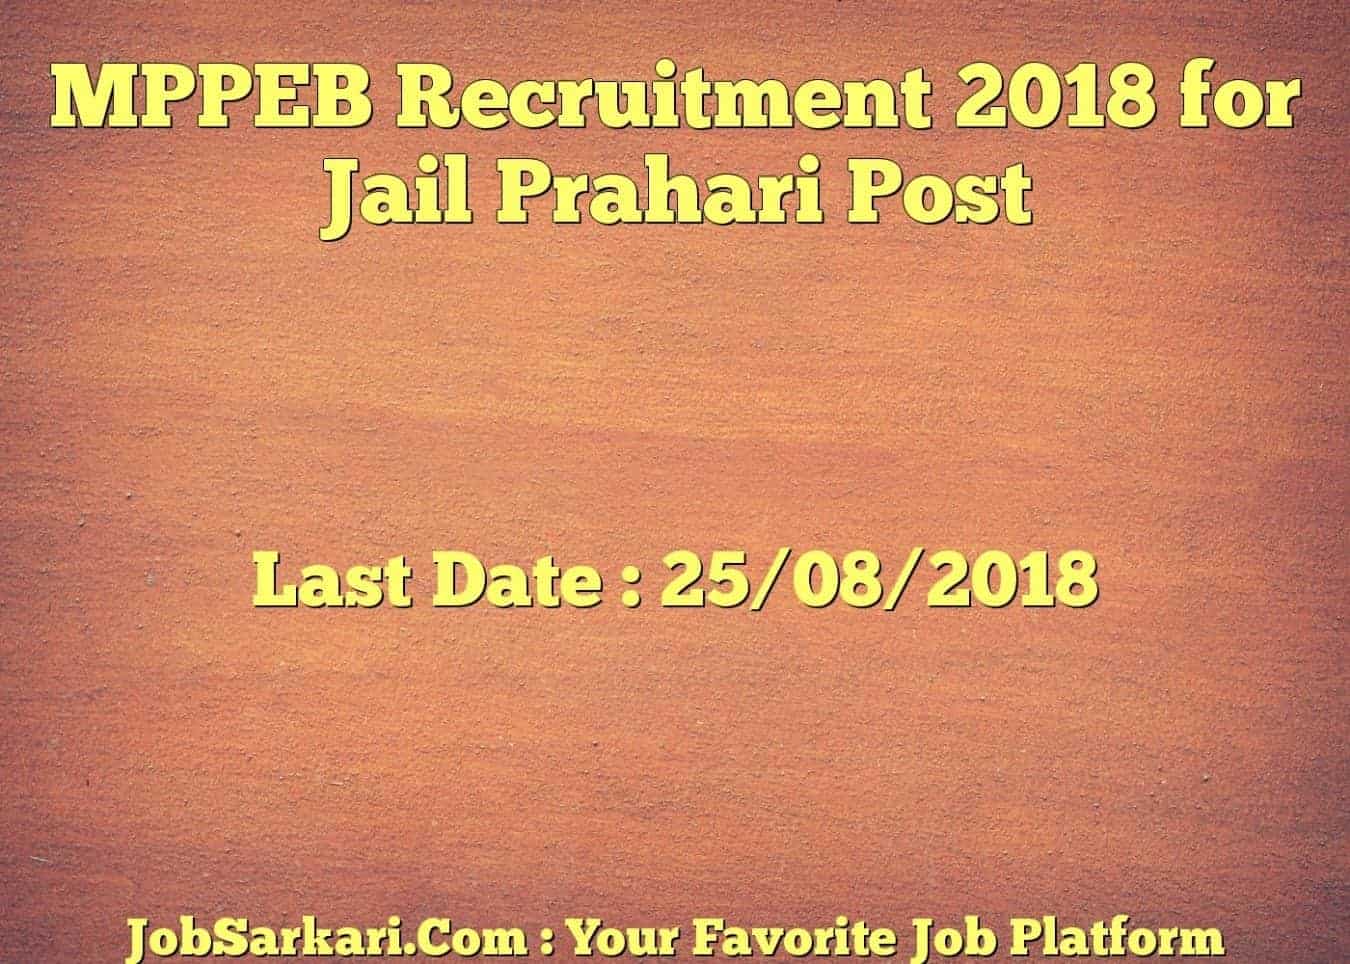 MPPEB Recruitment 2018 for Jail Prahari Post